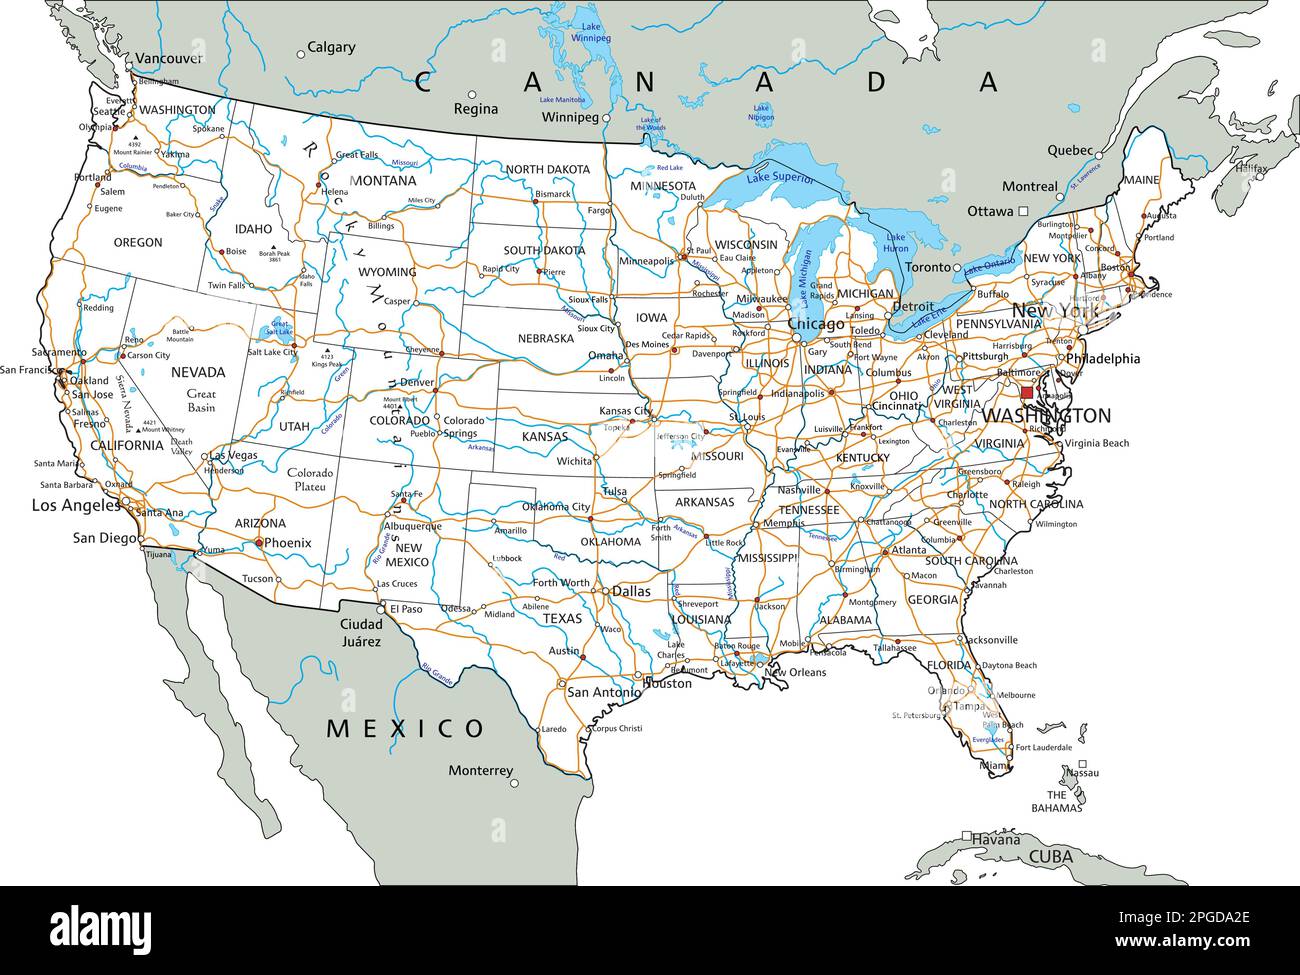 Detaillierte Roadmap der Vereinigten Staaten von Amerika mit Kennzeichnung. Stock Vektor